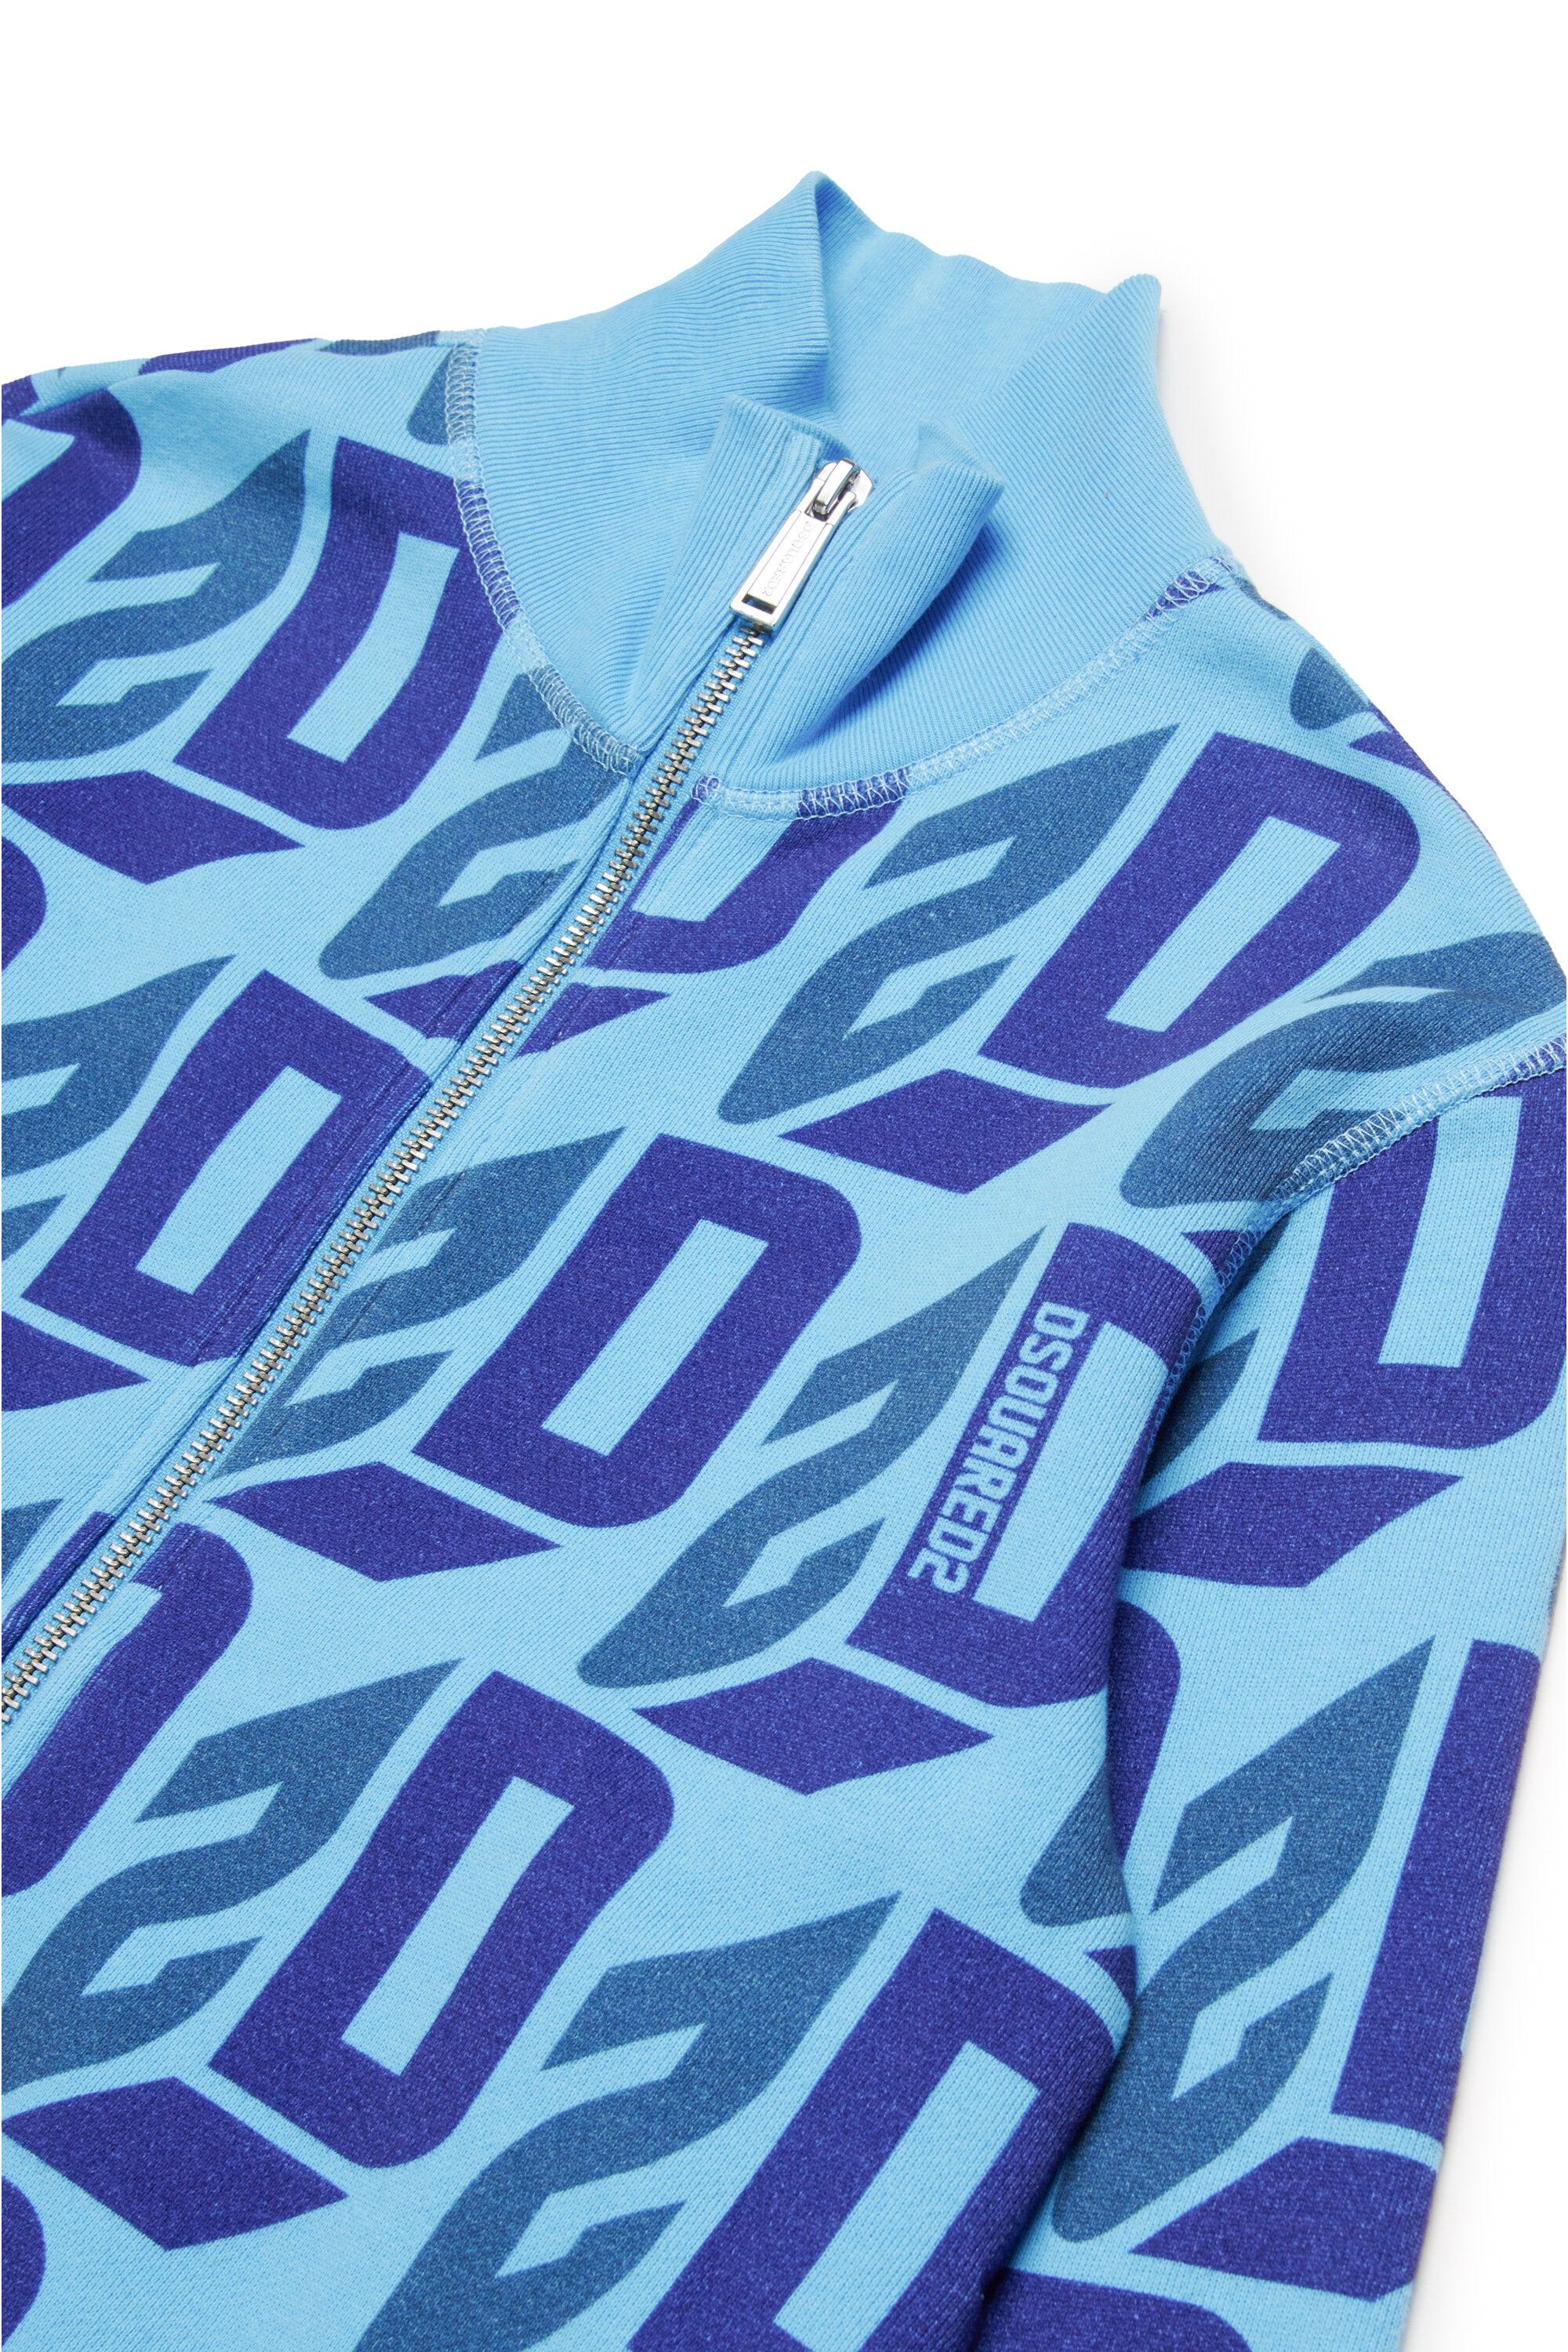 Sweatshirt with zip allover logo D2 3D effect